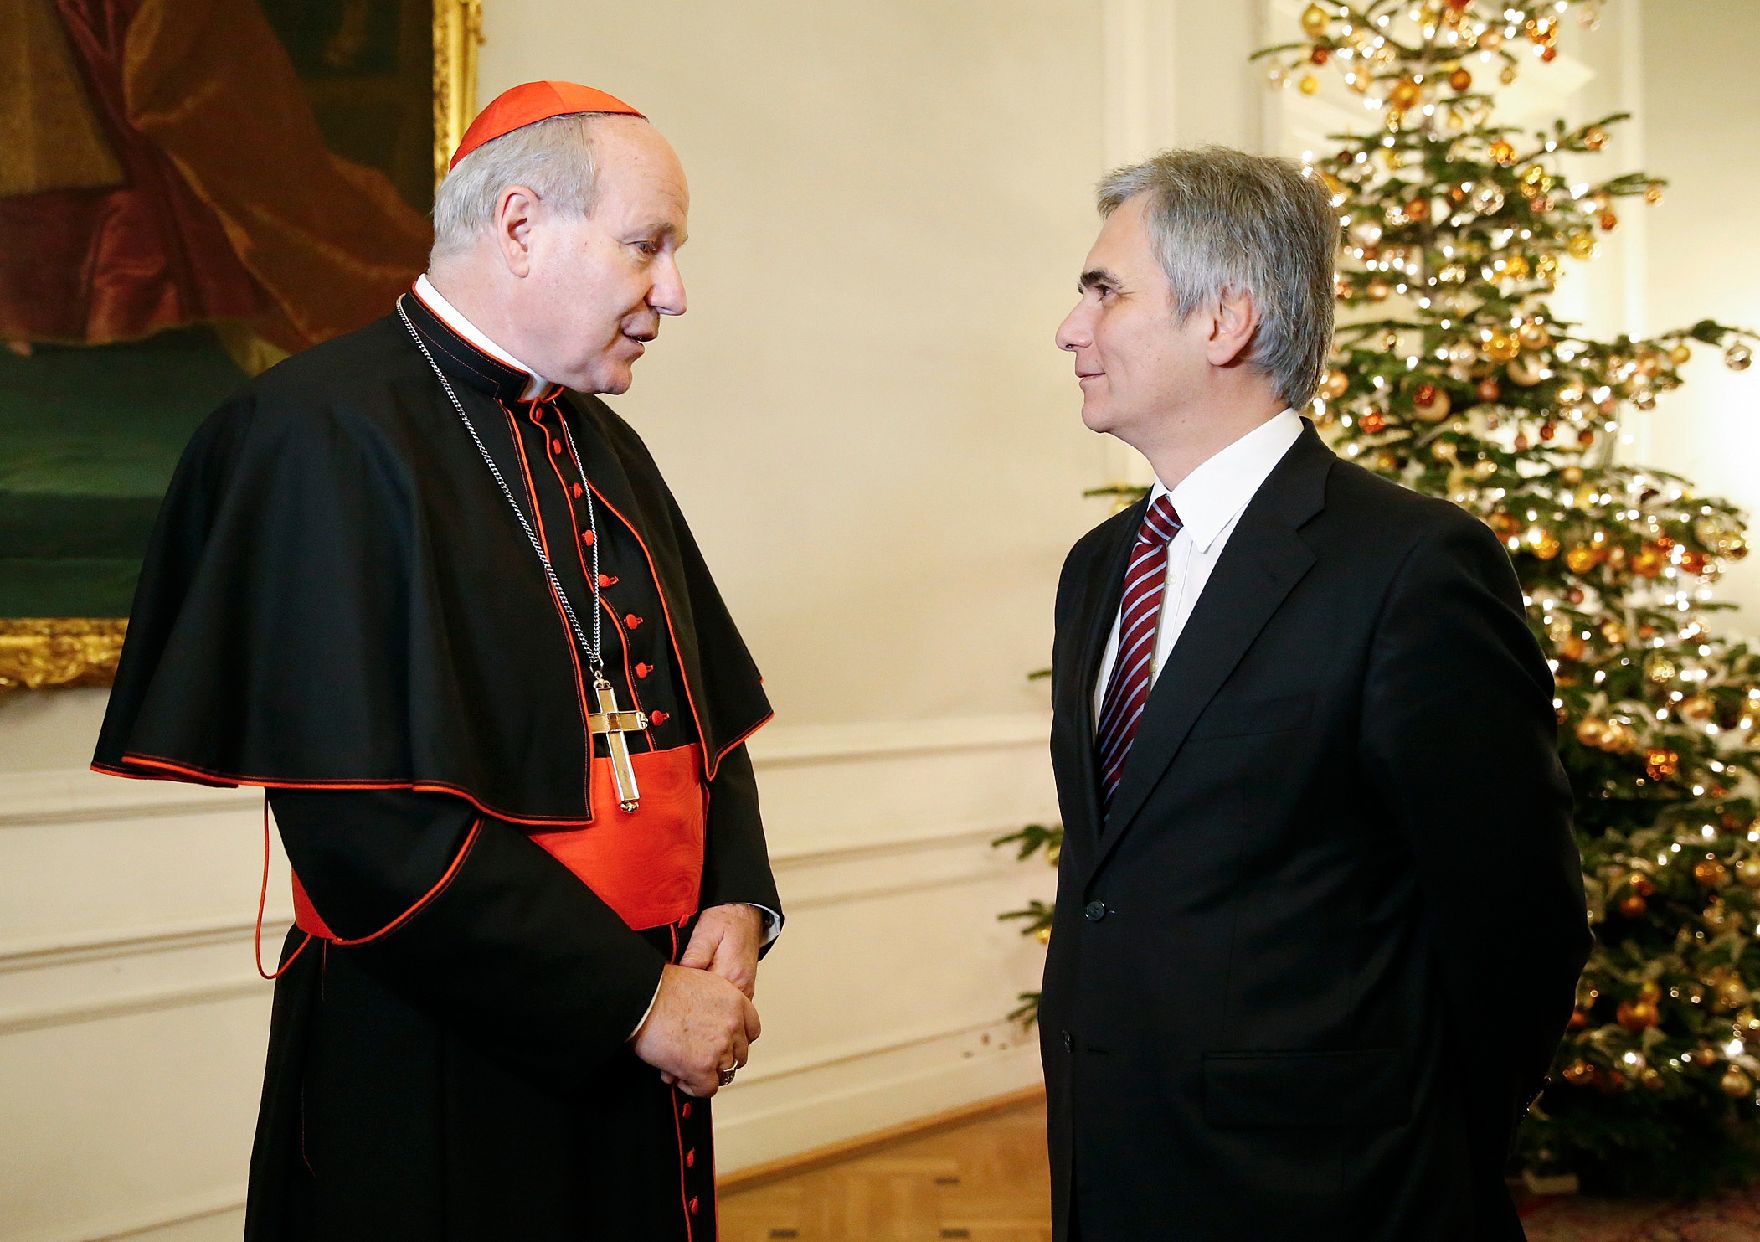 Am 11. Dezember 2012 lud der Bundeskanzler religiöse Vertreter zu einem Adventempfang in das Bundeskanzleramt. Im Bild Bundeskanzler Werner Faymann (r.) mit Kardinal Christoph Schönborn (l.).